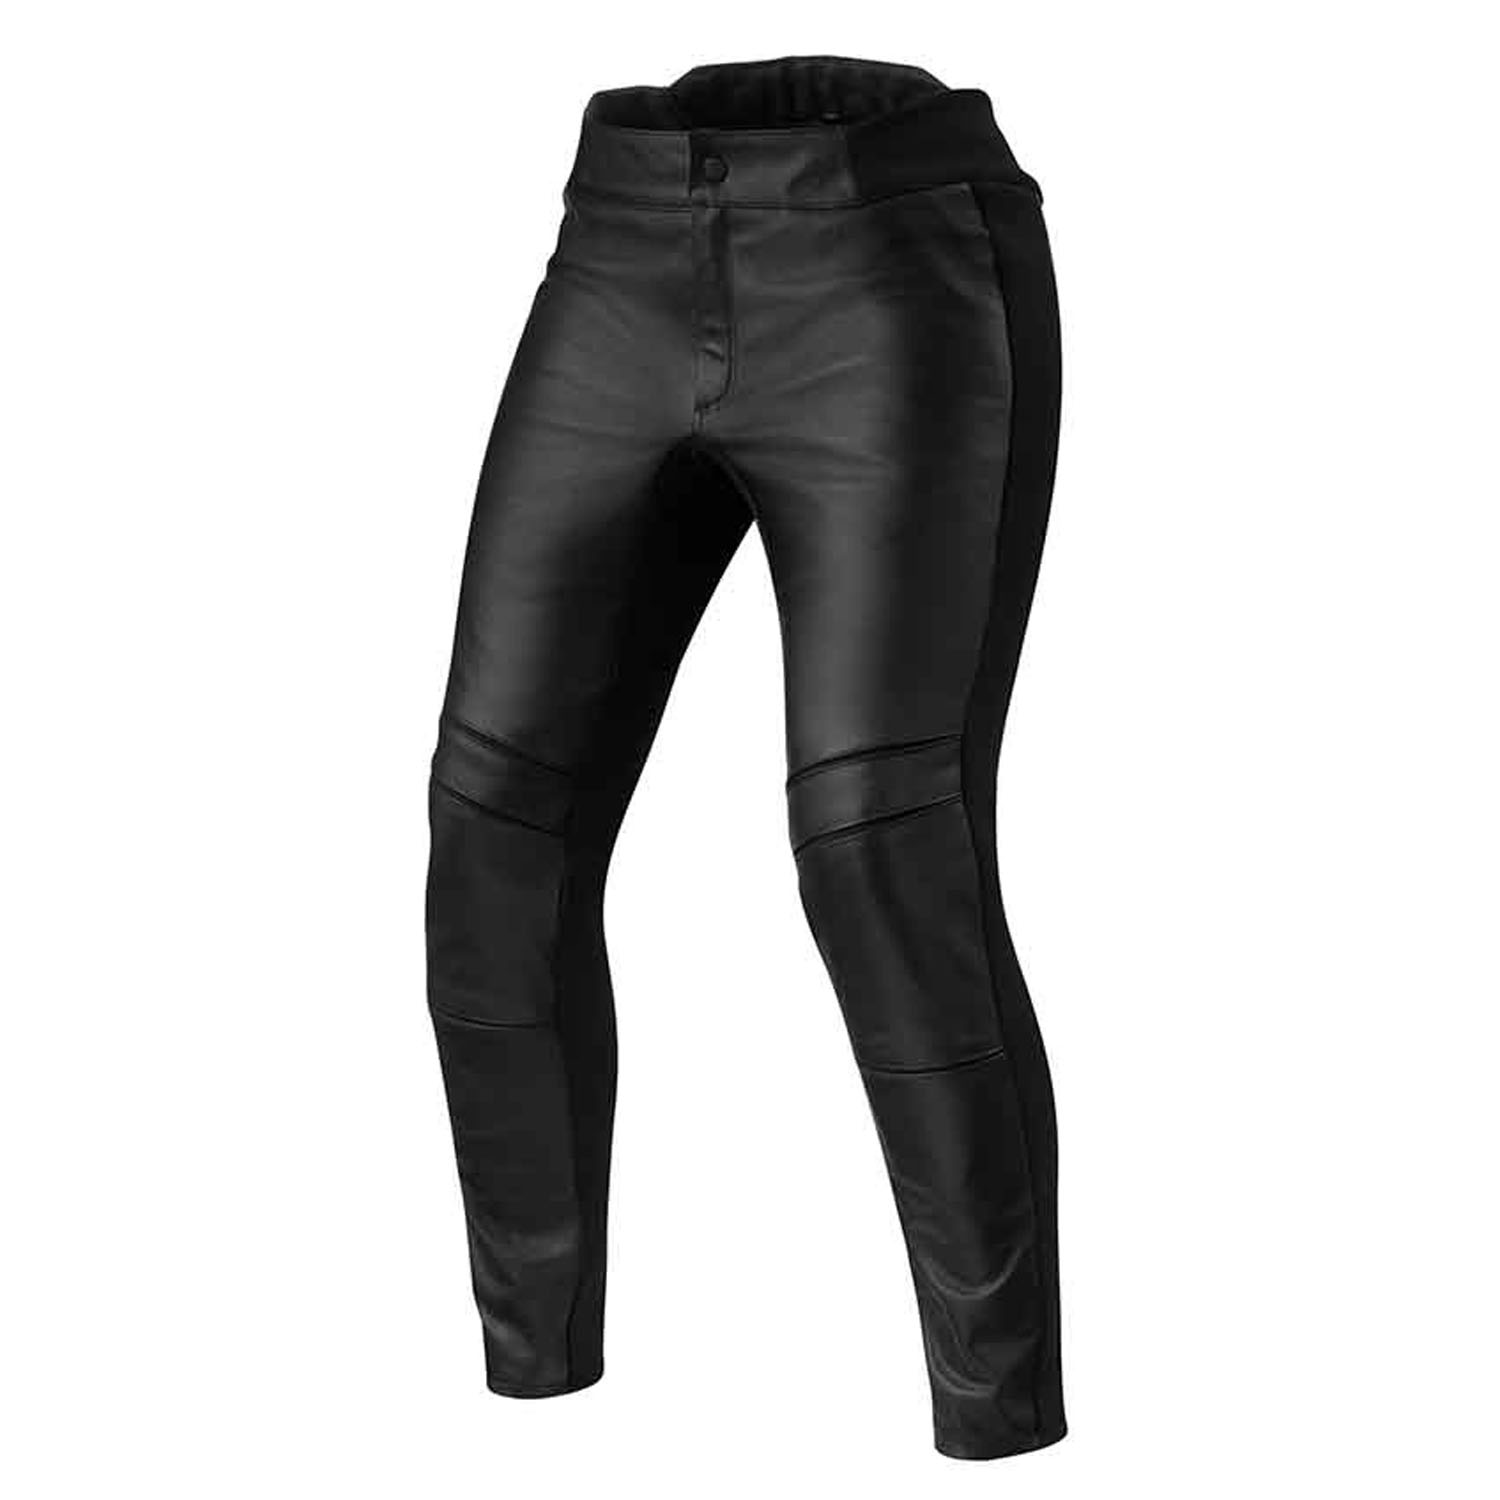 Image of REV'IT! Maci Ladies Black Standard Motorcycle Pants Talla 42